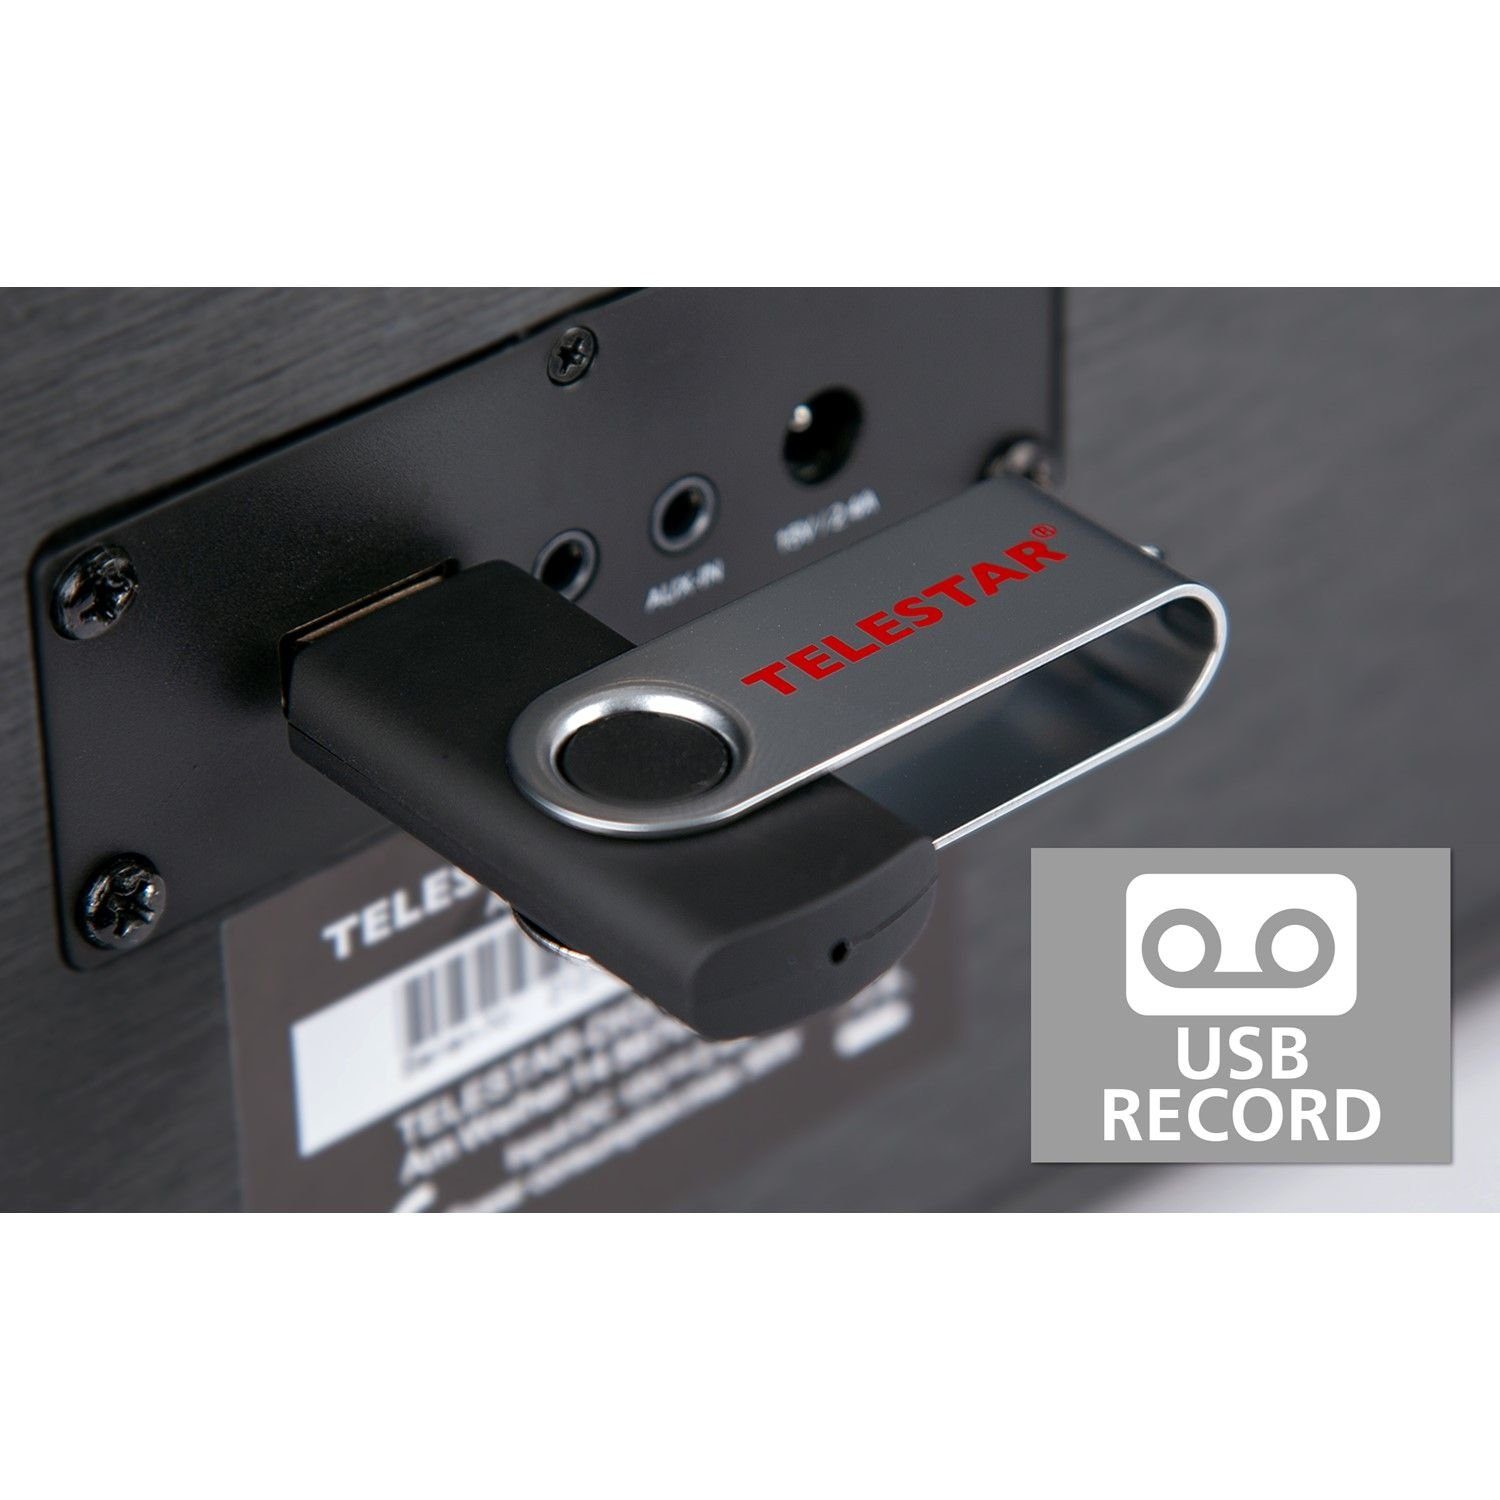 Stereoradio 24 Modi, Digitalradio CD Sleeptimer Record-Taste CD-Player und (DAB) DIRA möglich) mit für USB USB, S oder externe (DAB+/FM, Bluetooth) unterschiedlichen über (DAB+/UKW) schwarz Geräte, TELESTAR mit (Wecker Ladefunktion Timer Aufzeichnung